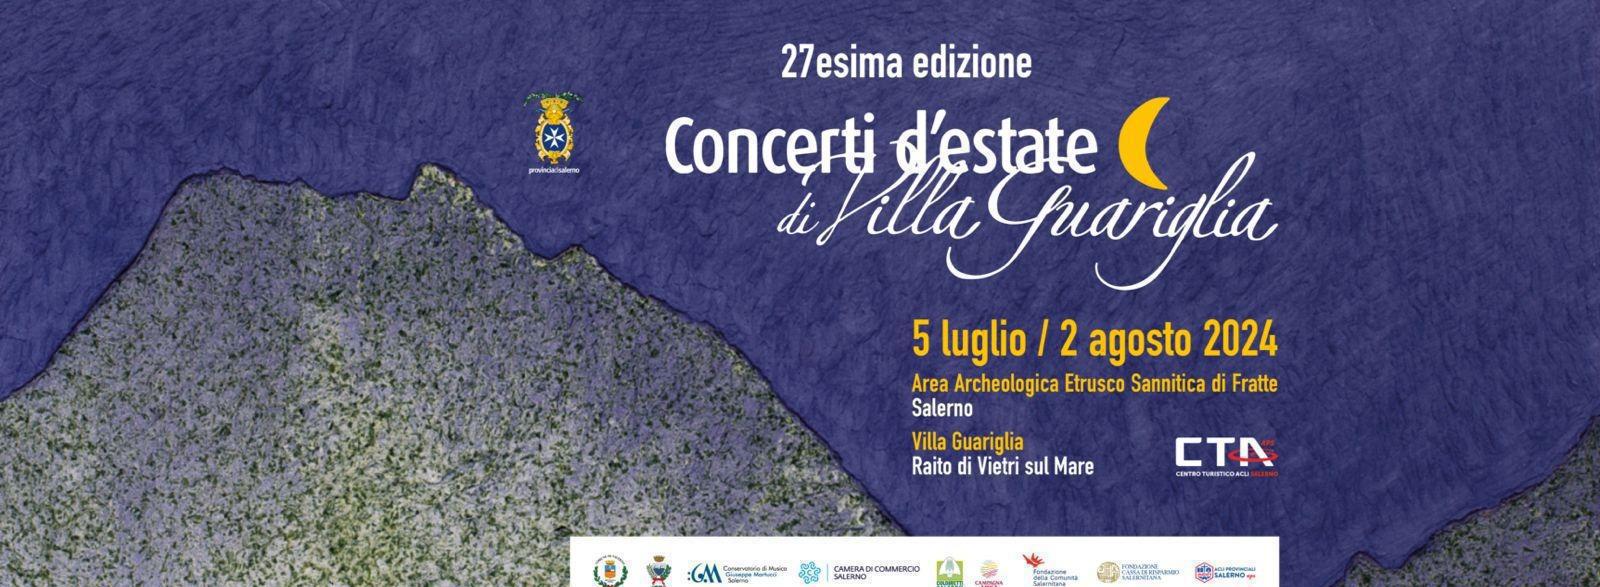 EVENTO - Concerti d'estate a Villa Guariglia, "Somebody to love", l'omaggio  sinfonico ai Queen all'Area Archeologica di Fratte mercoledì 24 luglio